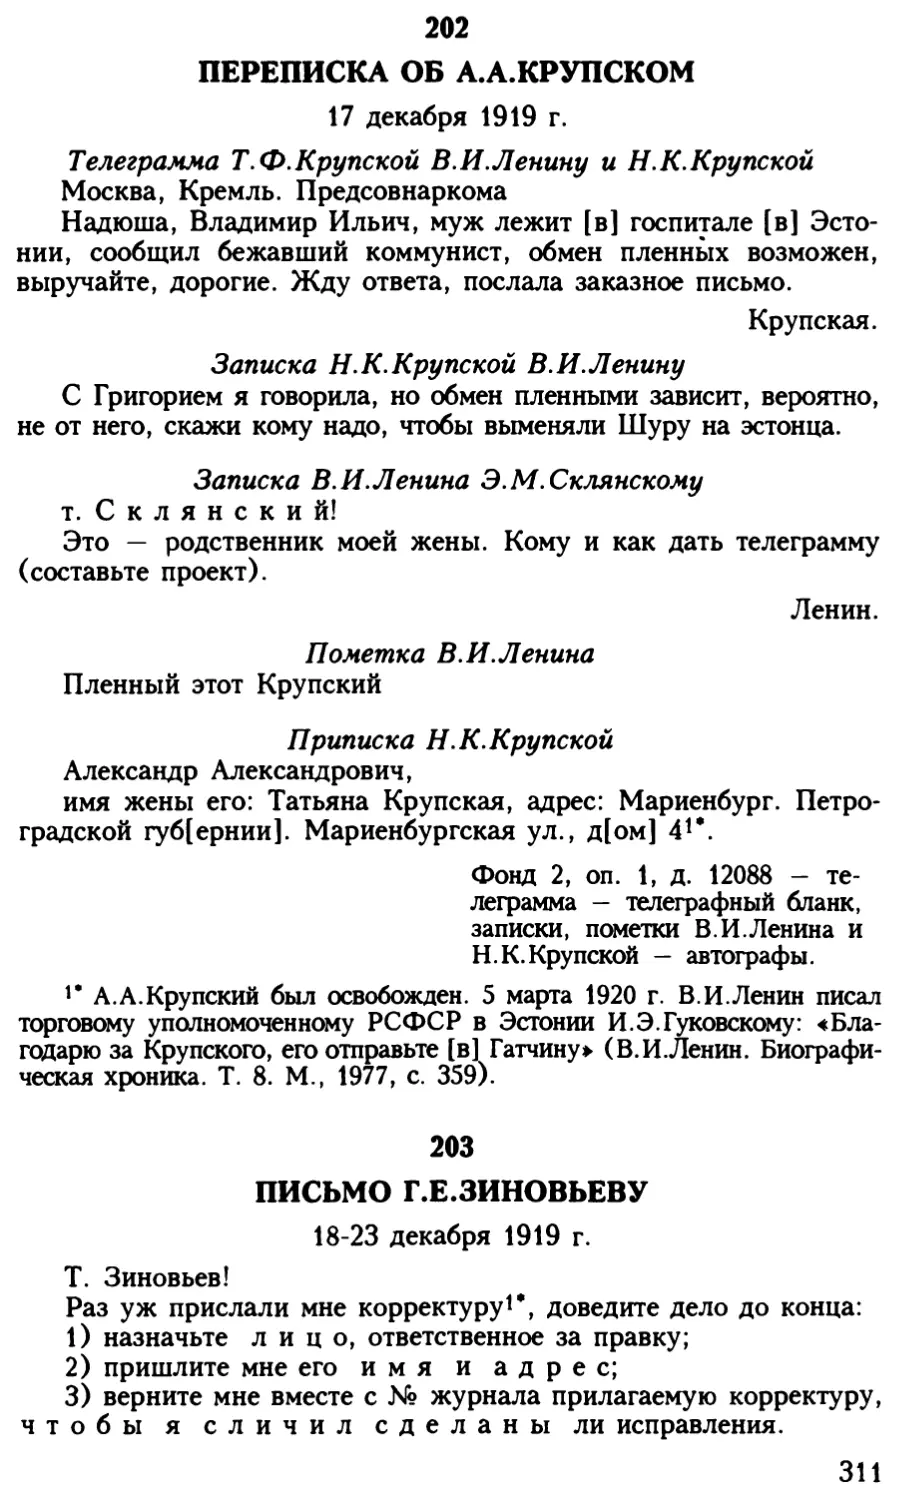 203. Письмо Г.Е.Зиновьеву. 18 — 23 декабря 1919 г